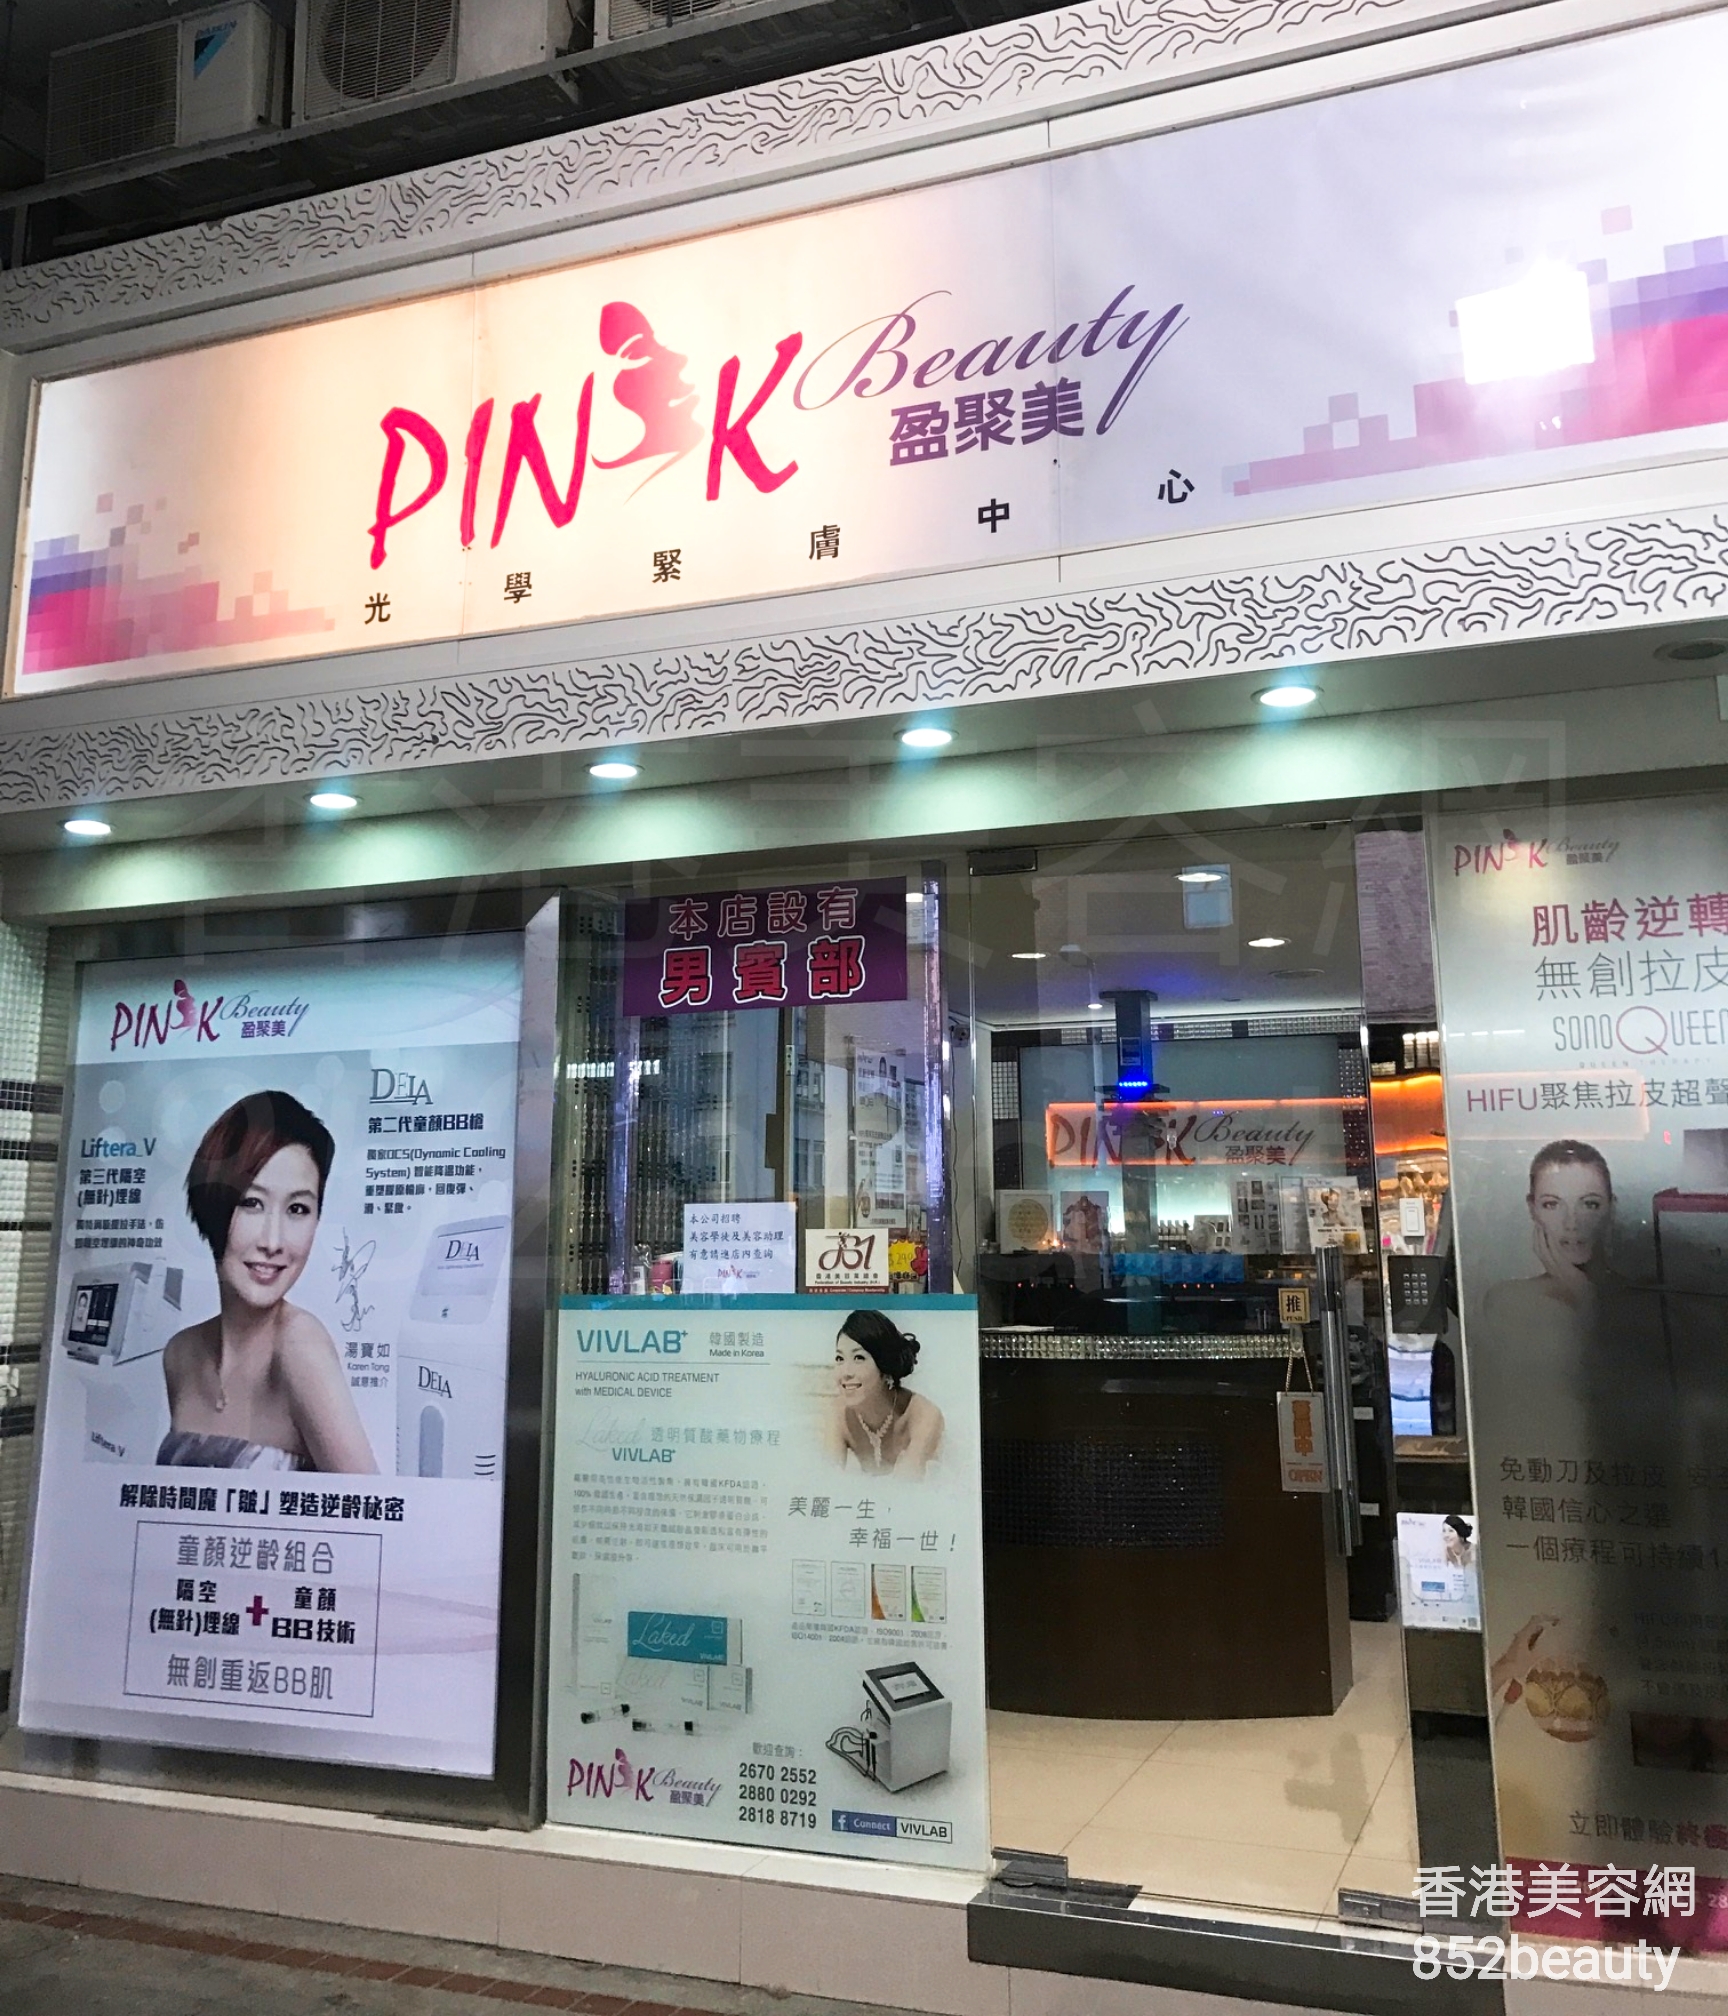 香港美容網 Hong Kong Beauty Salon 美容院 / 美容師: PINK Beauty 盈聚美 光學緊膚中心 (美孚店)